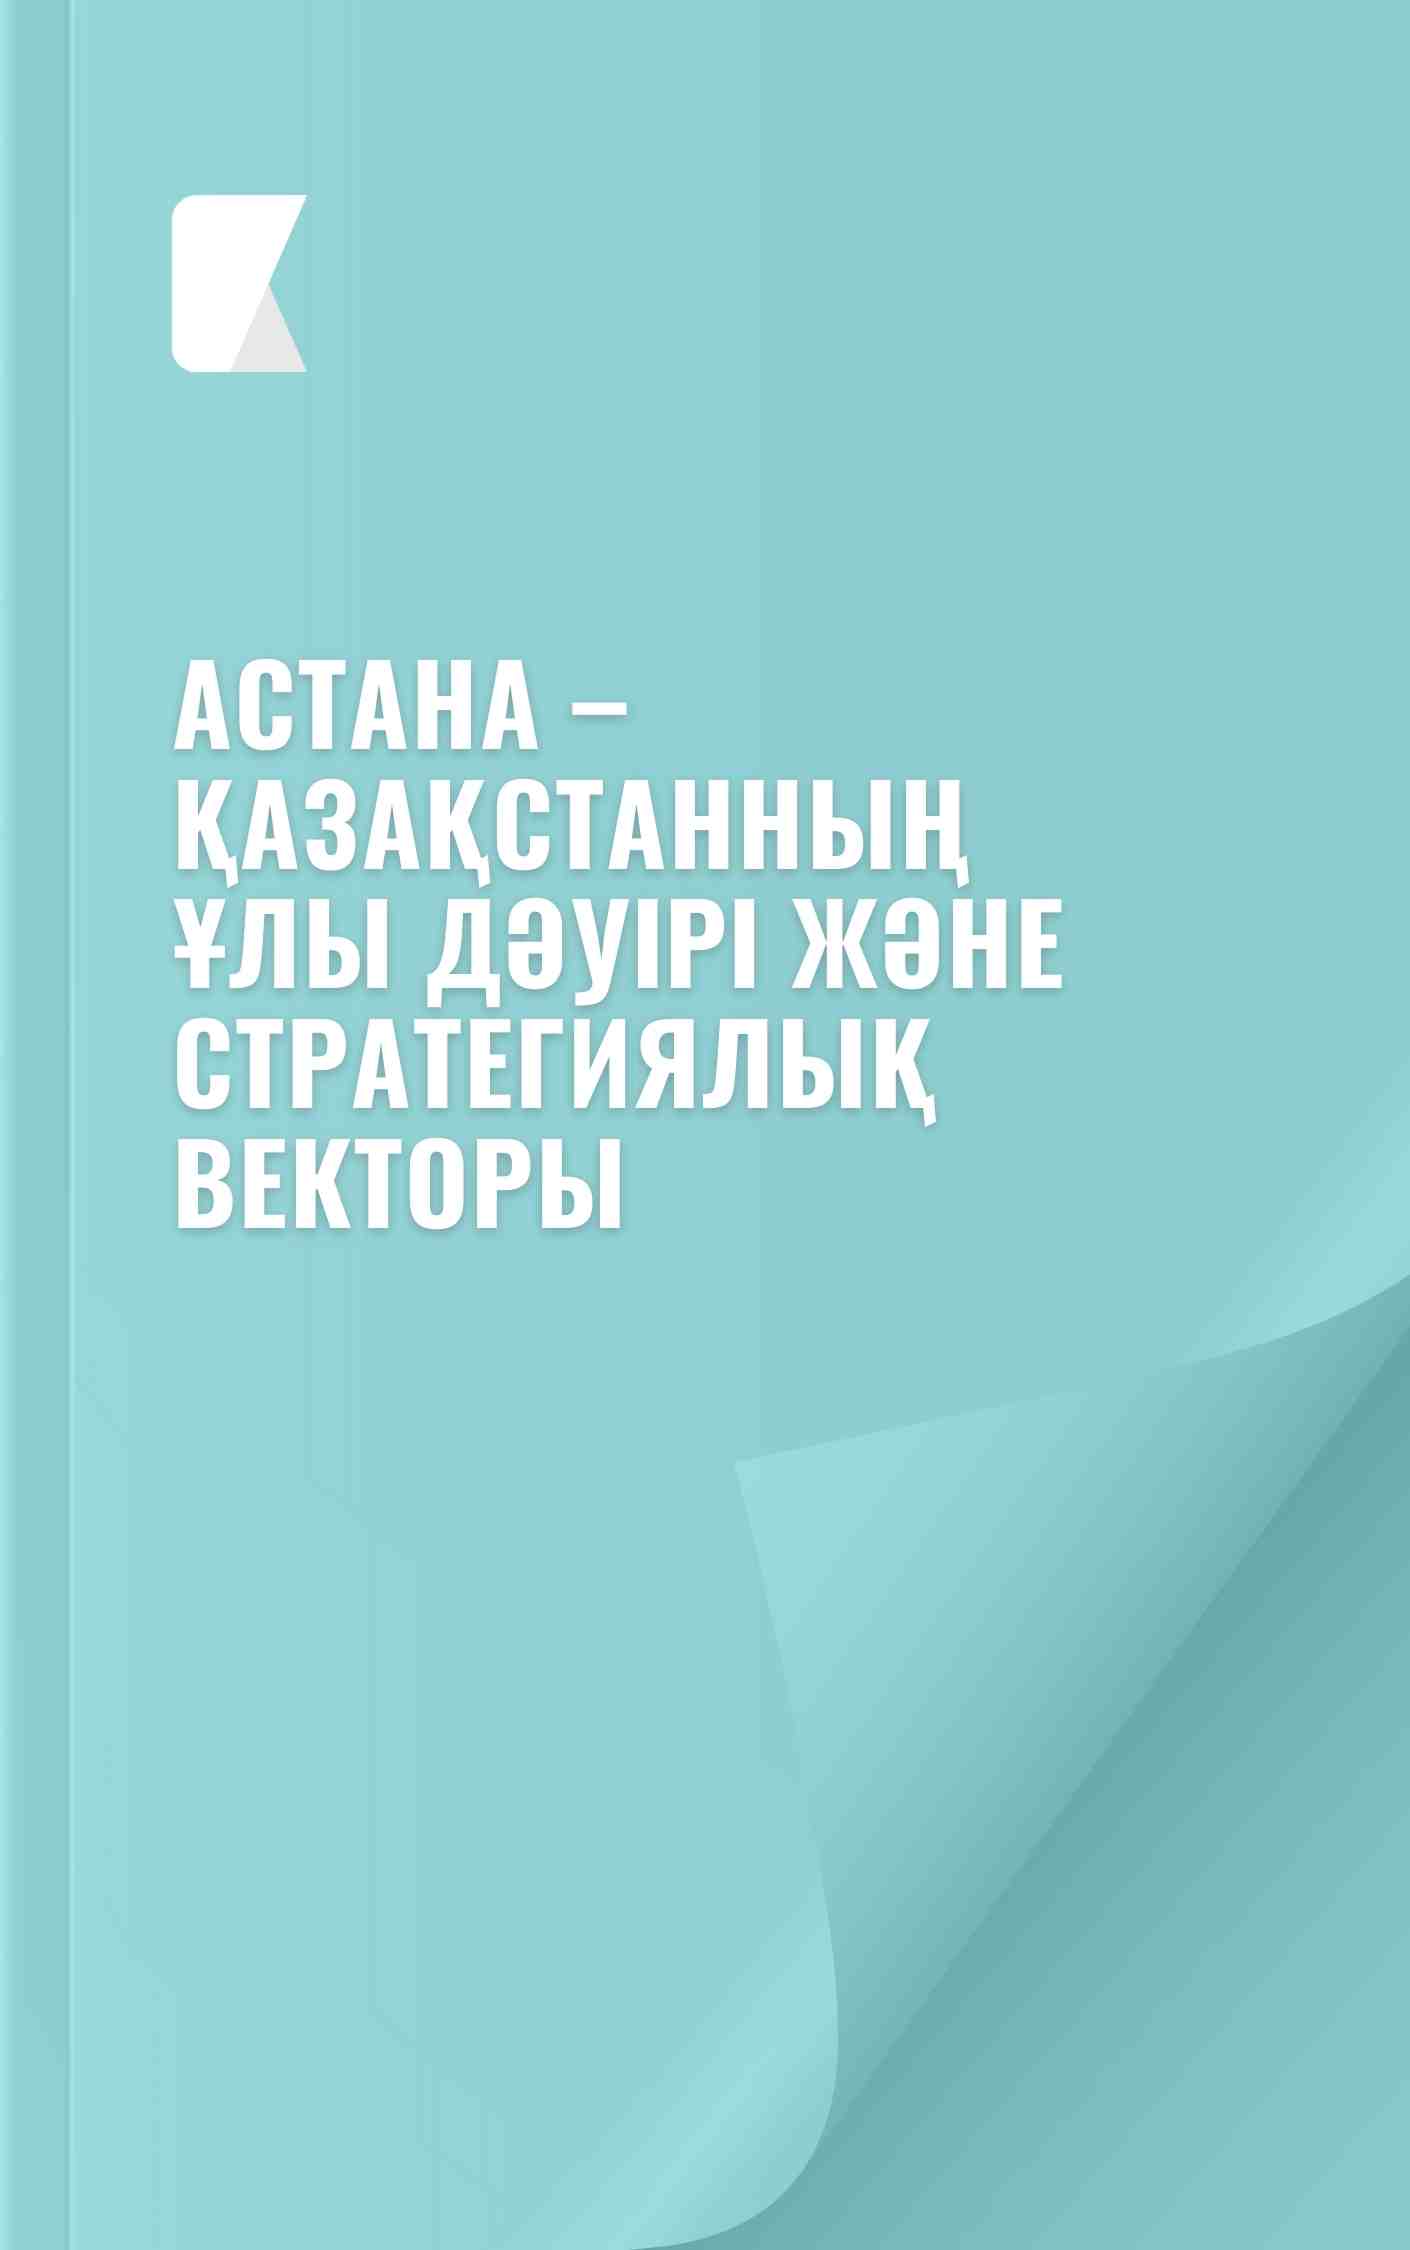 Астана – Қазақстанның ұлы дәуірі және стратегиялық векторы